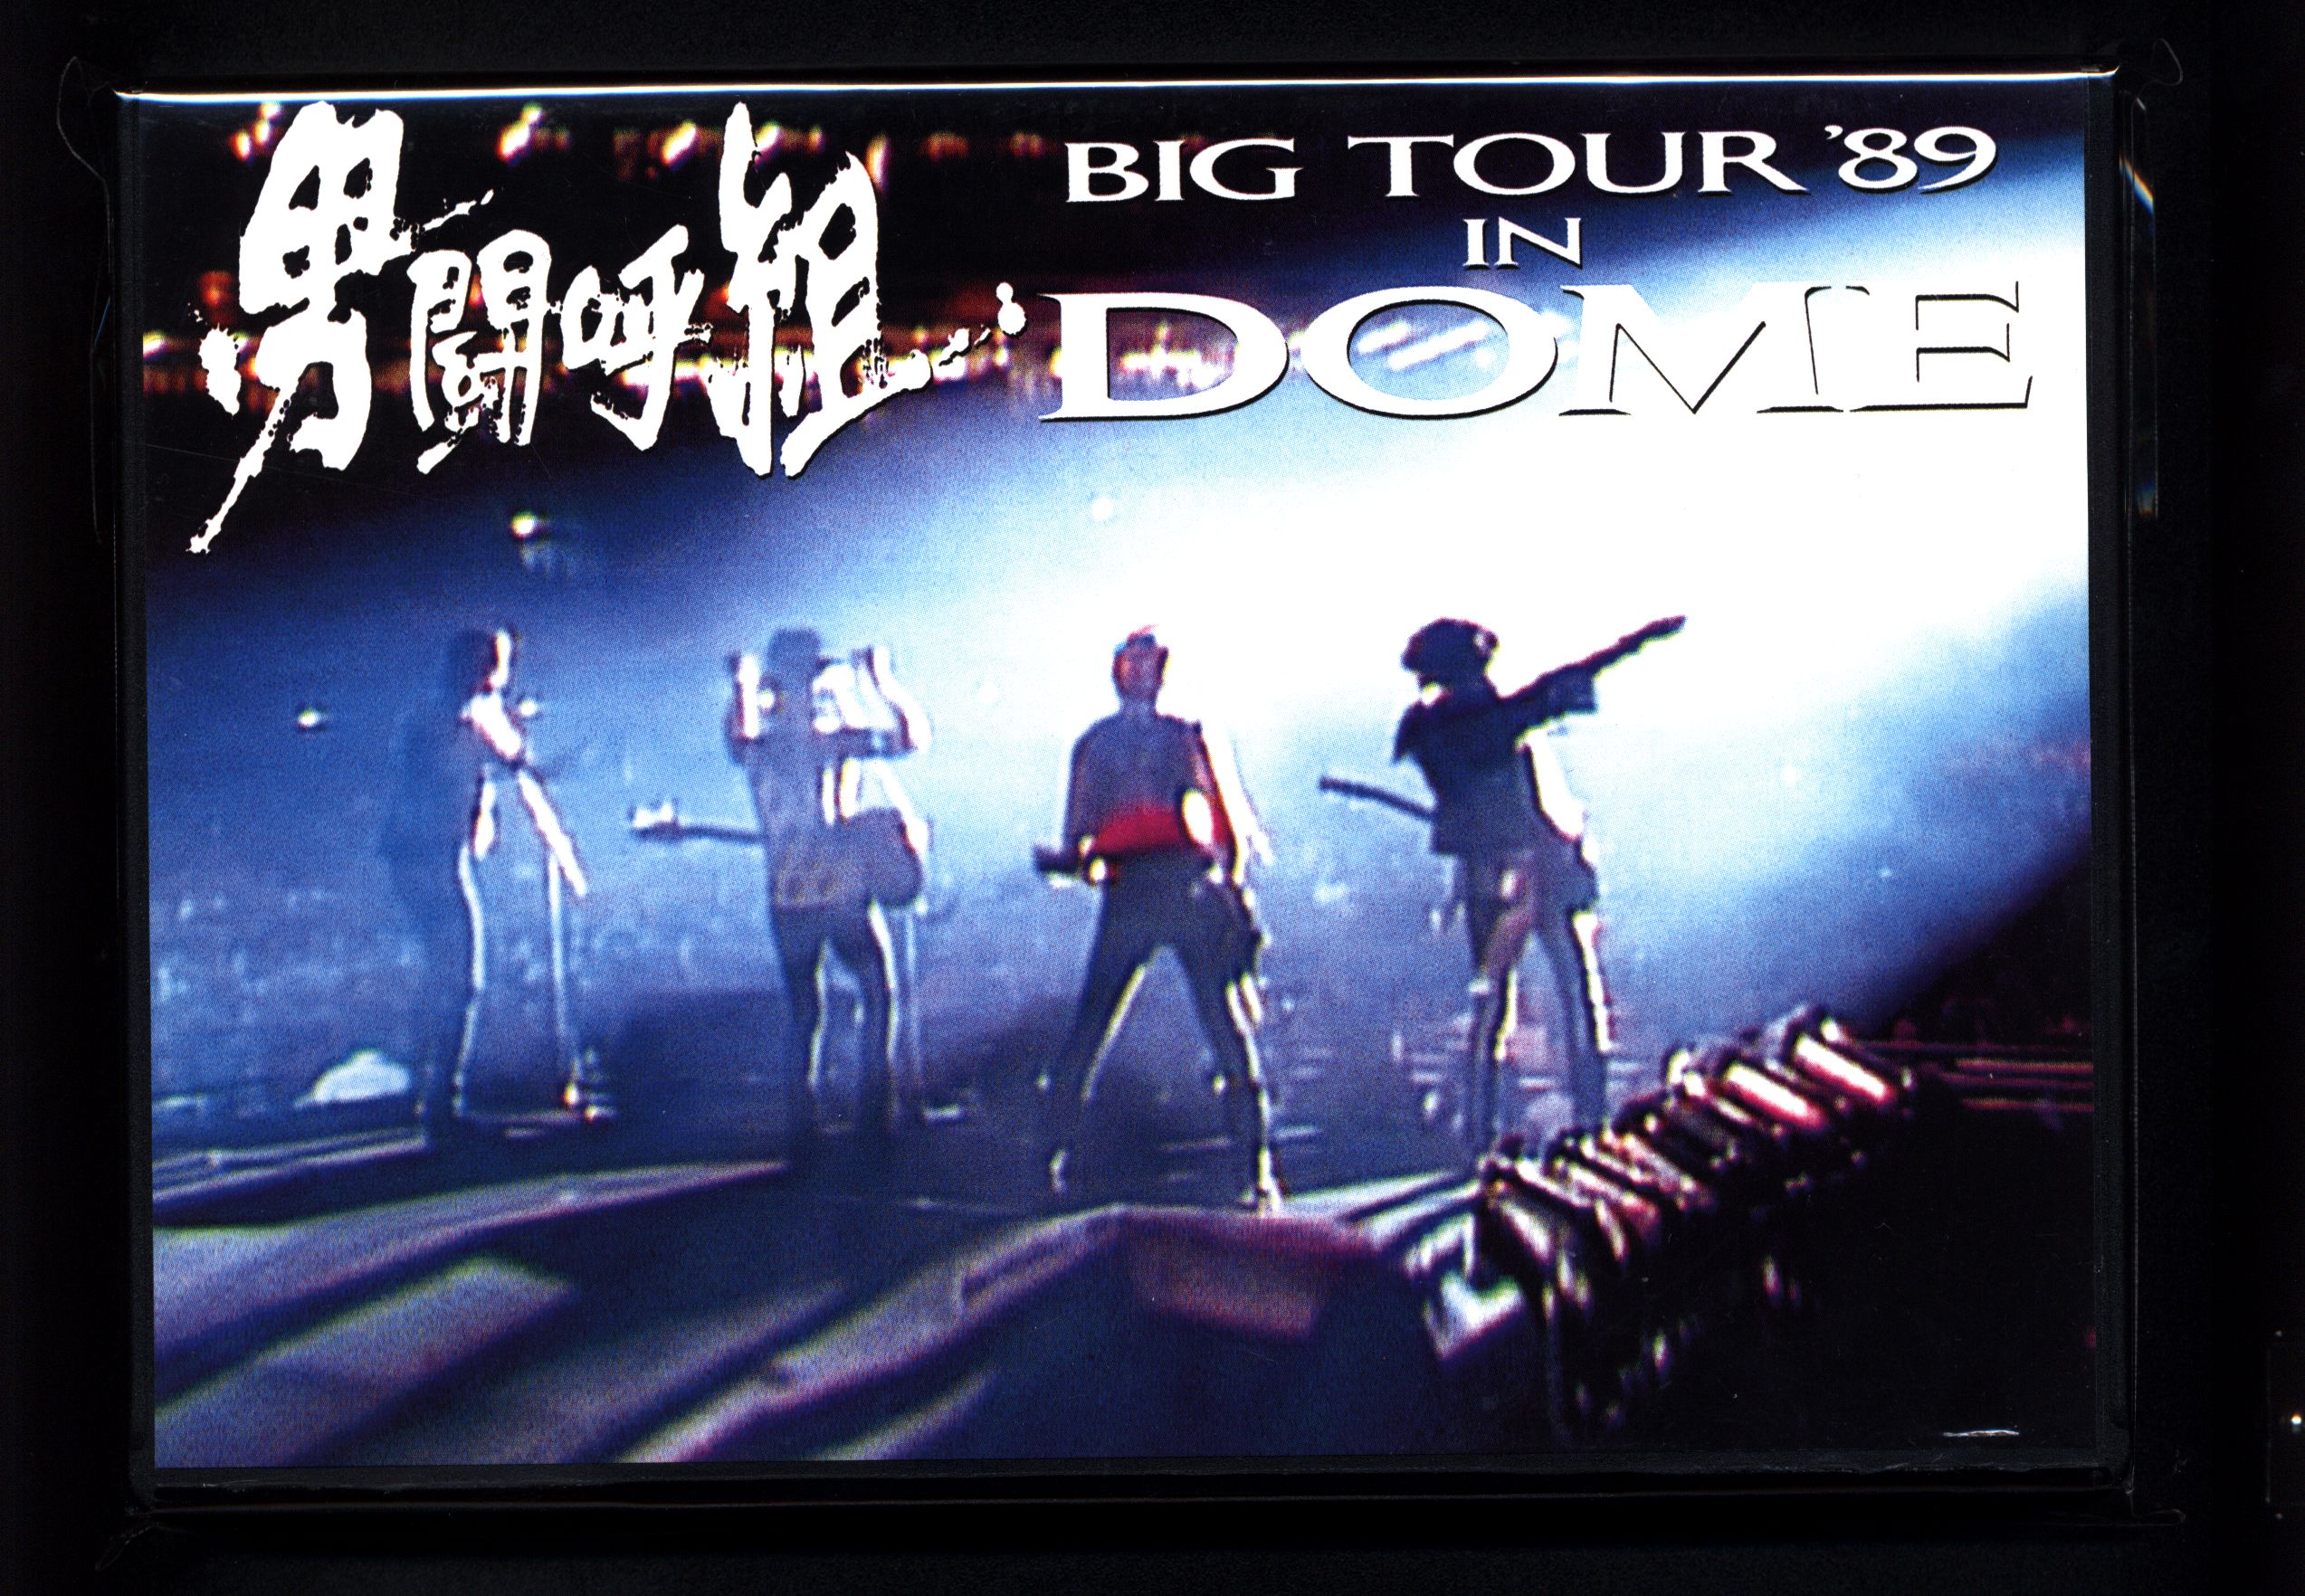 スムーズにご視聴いただけます男闘呼組 BIG TOUR '89 IN DOME 動作確認済み VHSビデオ